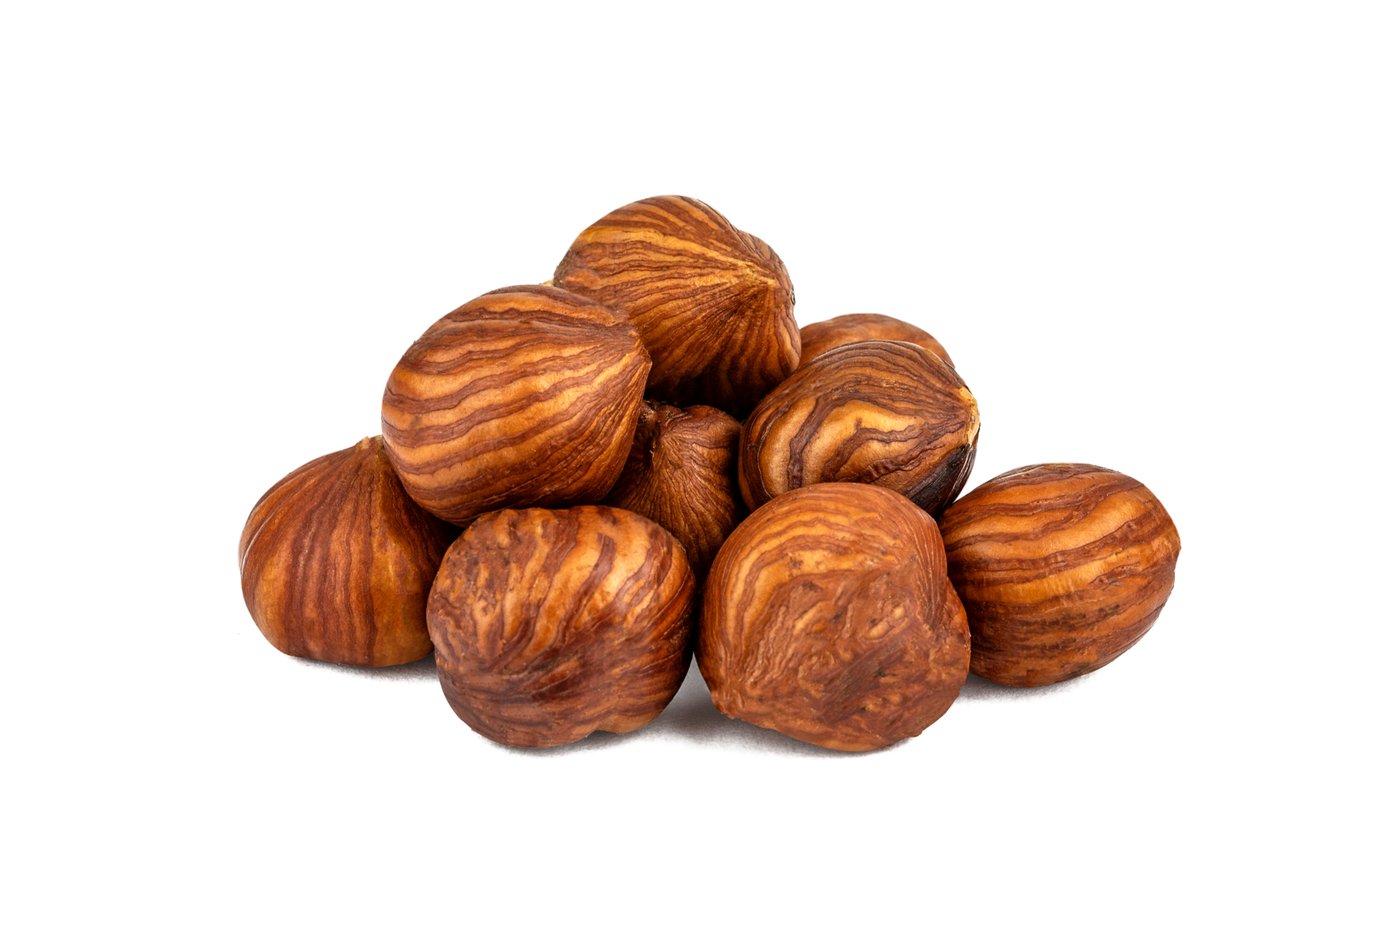 Raw Hazelnuts / Filberts (No Shell) photo